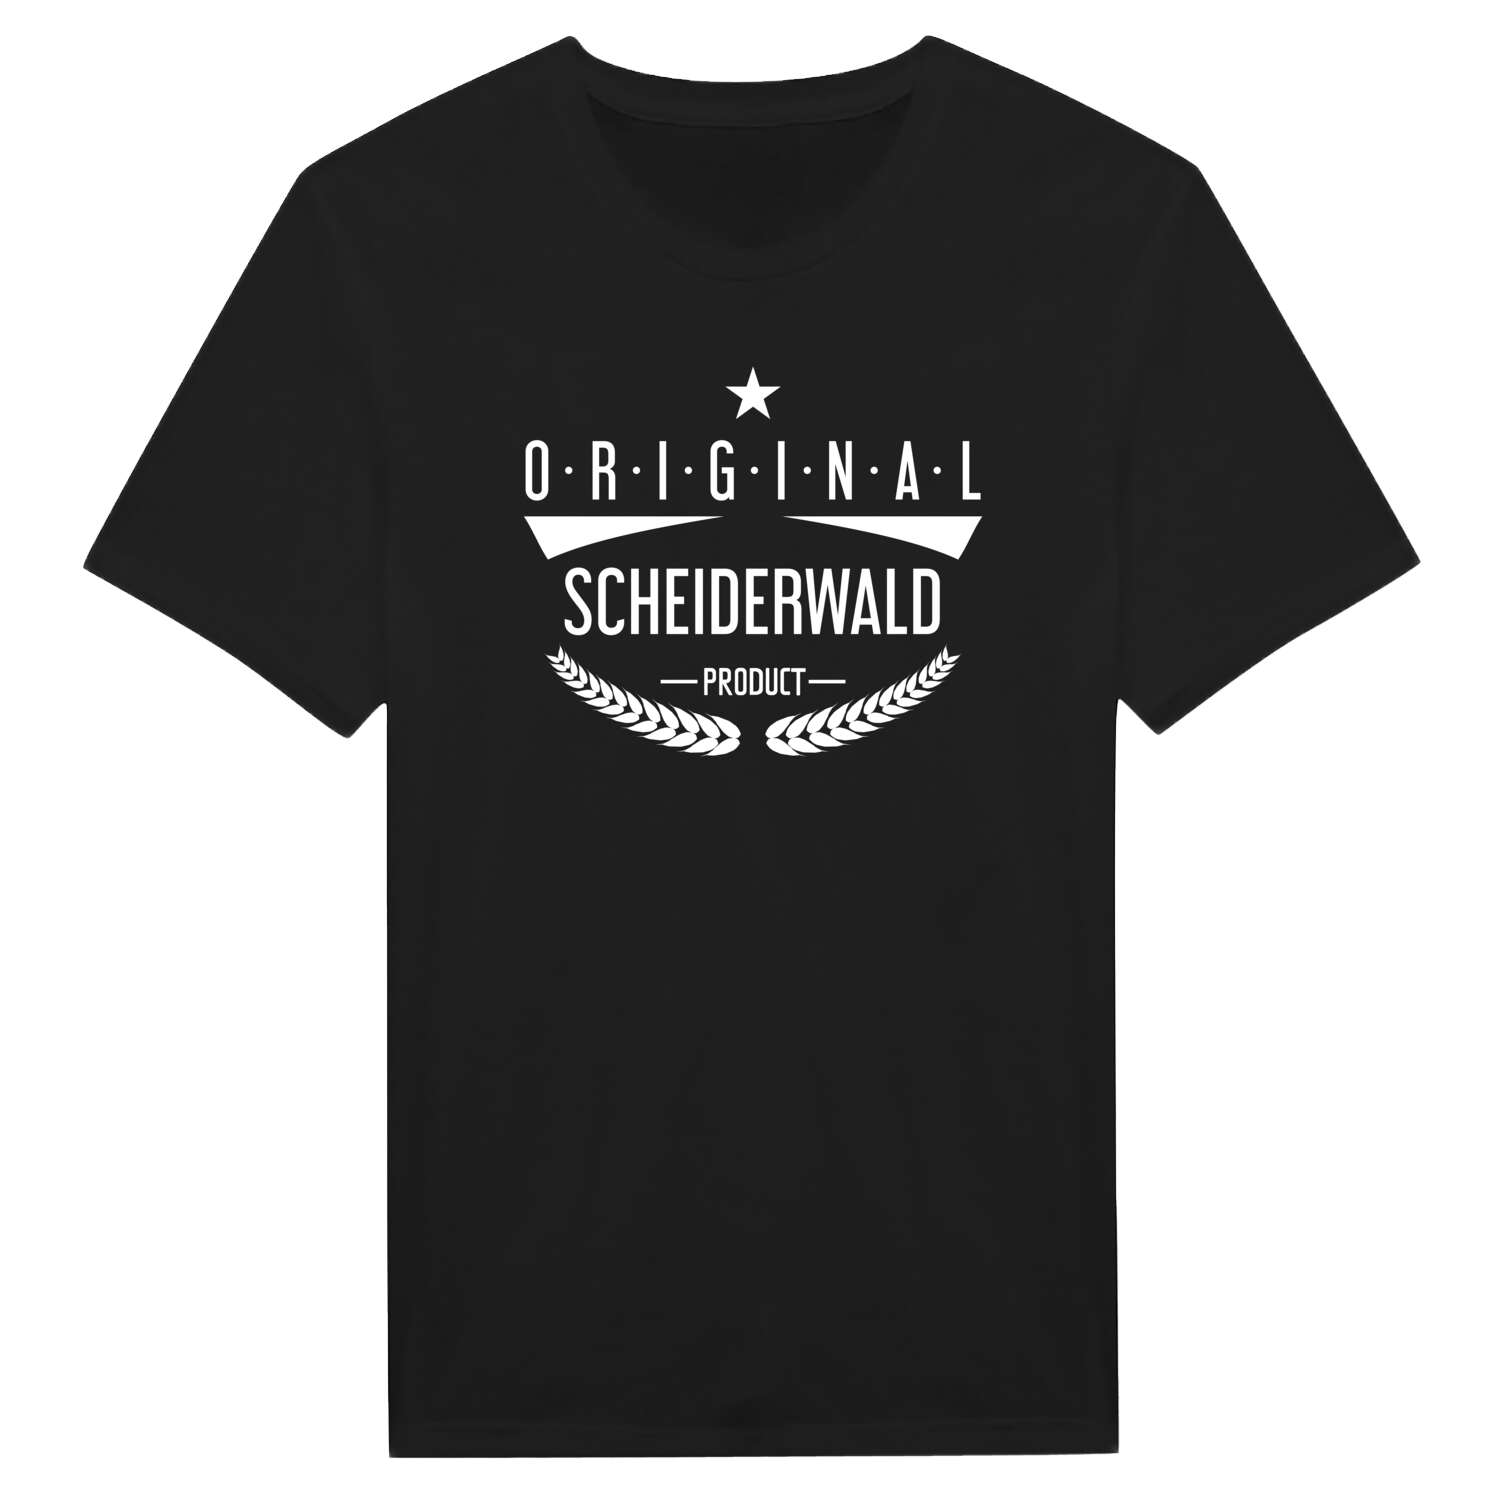 Scheiderwald T-Shirt »Original Product«